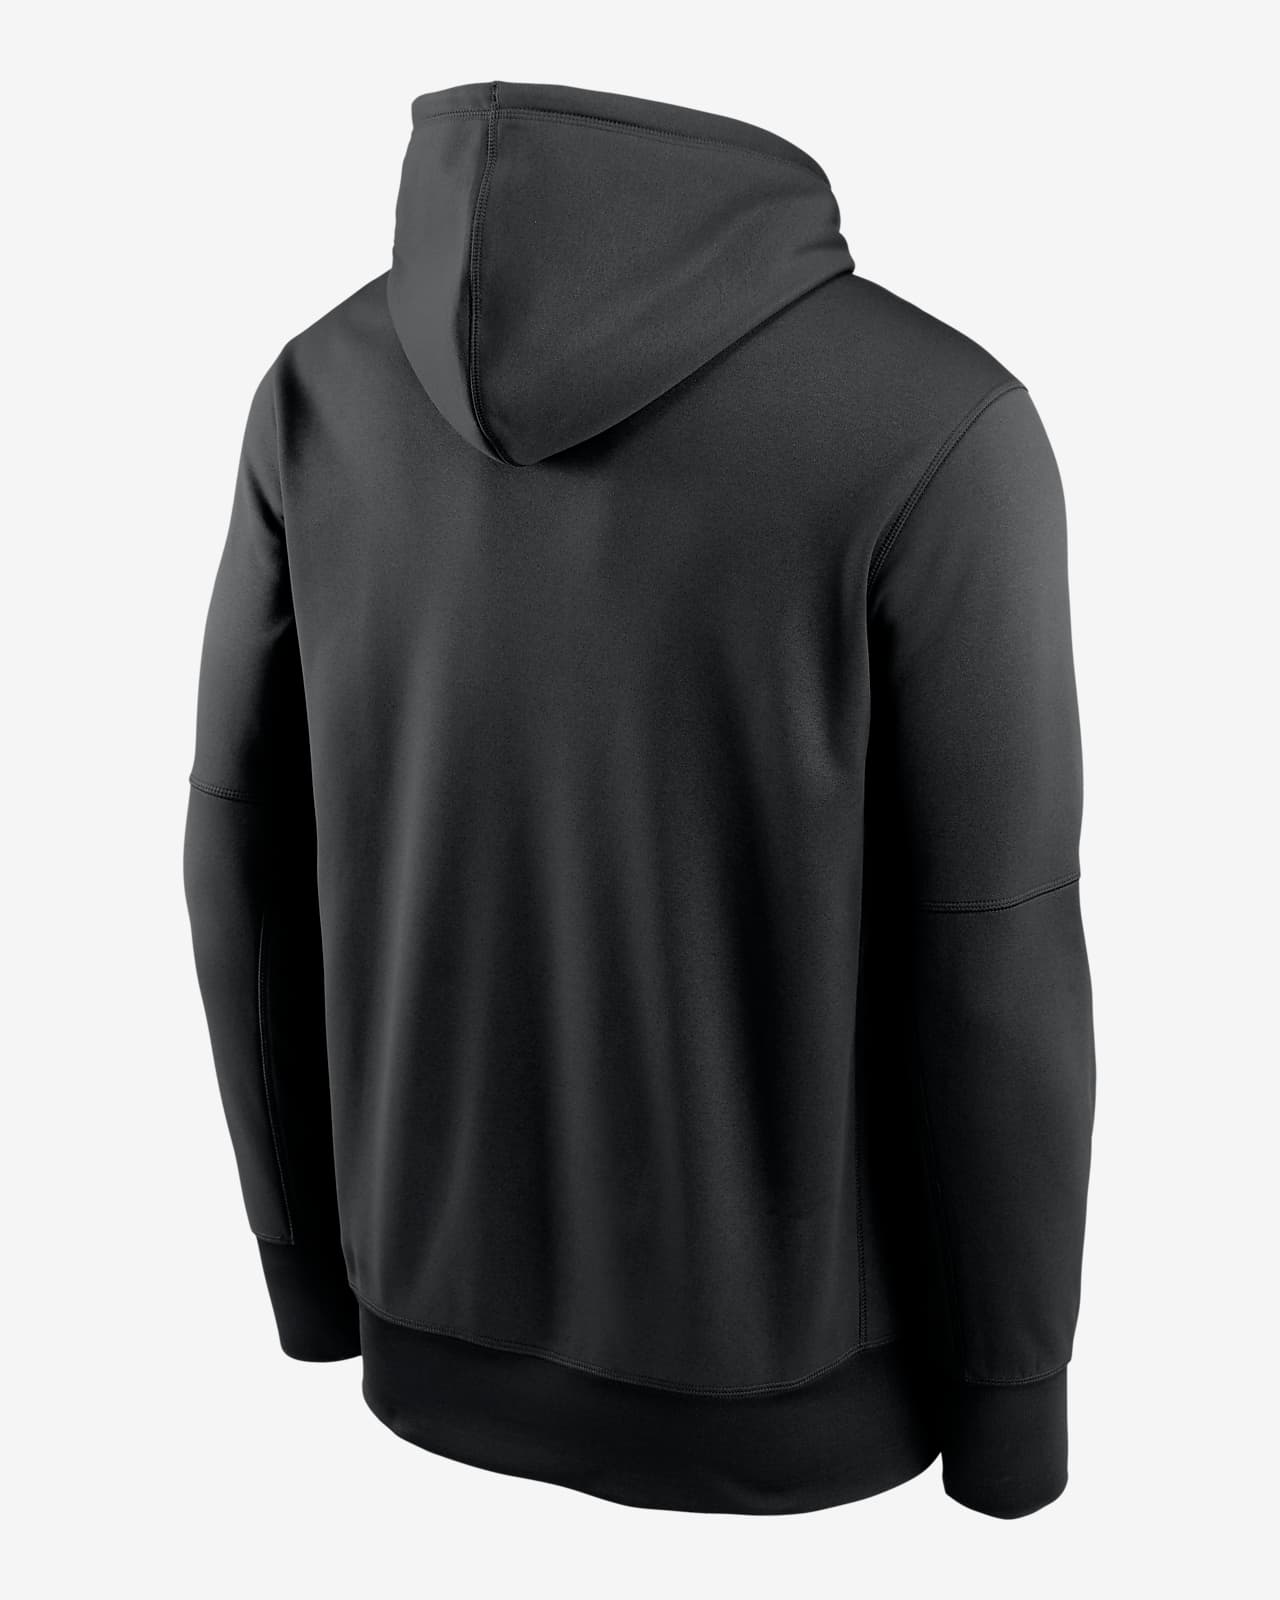 Orioles Postseason Shirt Sweatshirt Hoodie Nike Mens Womens Kids